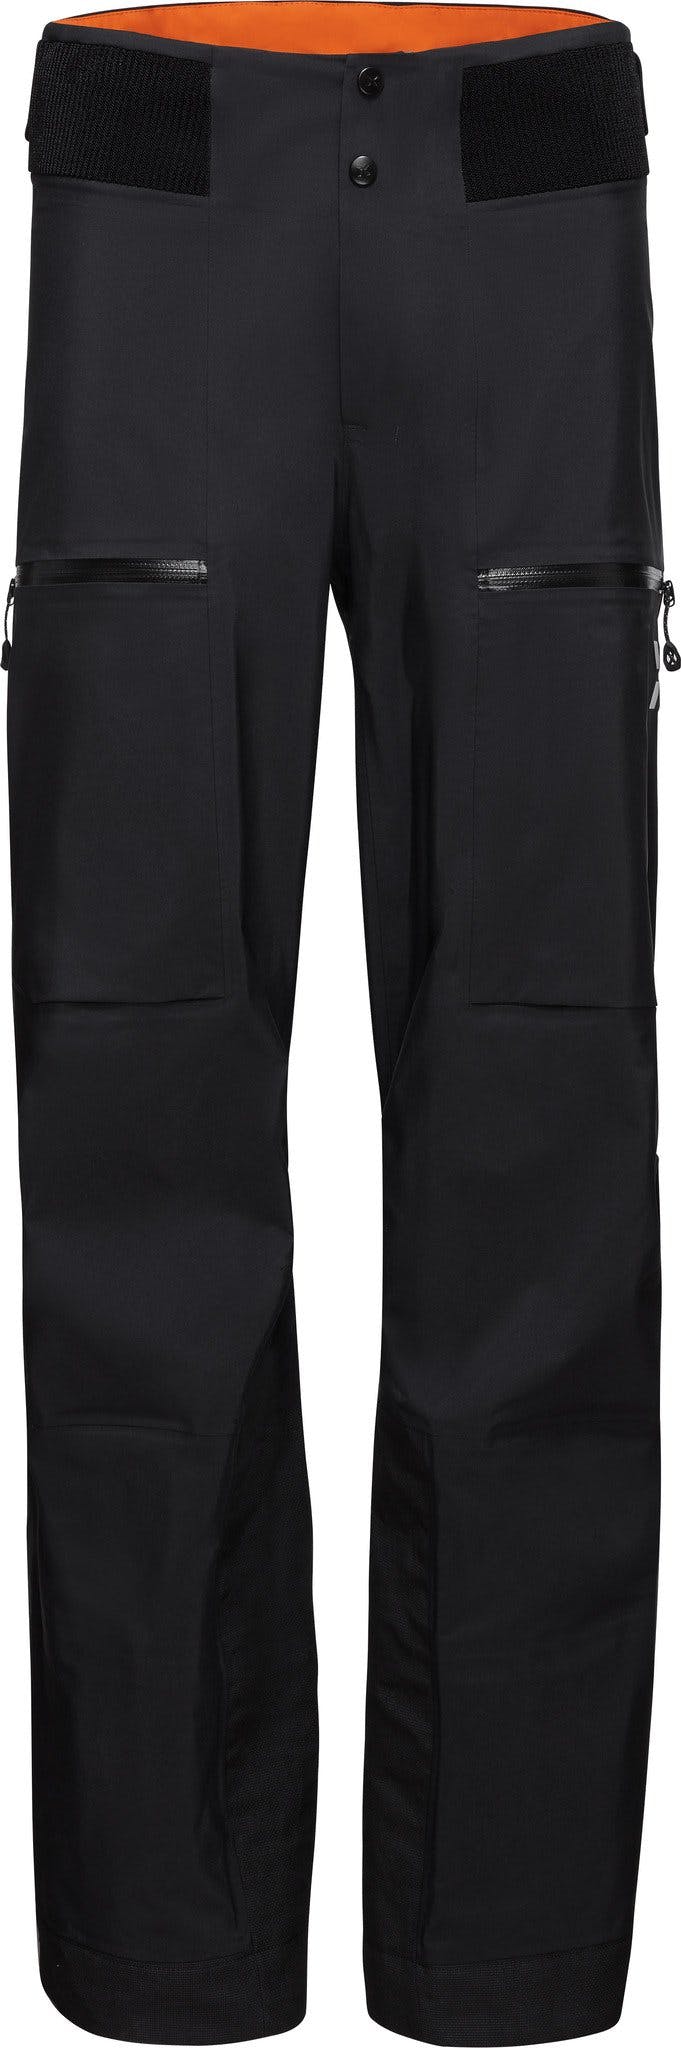 Numéro de l'image de la galerie de produits 1 pour le produit Pantalon coquille rigide Eiger Free Advanced - Homme